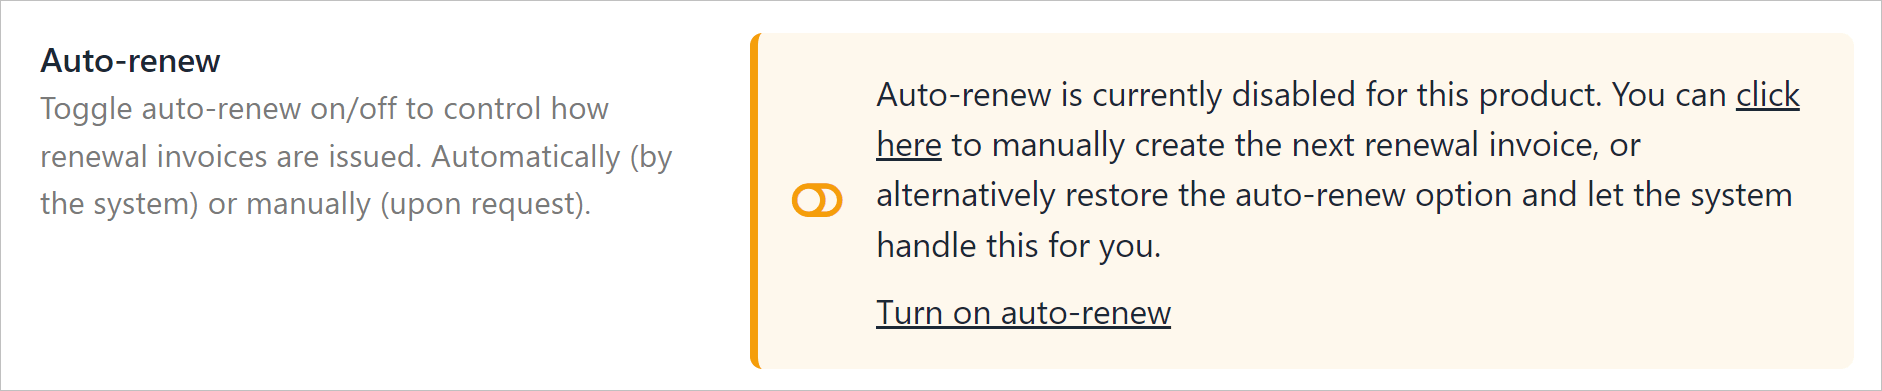 Auto-renew is off